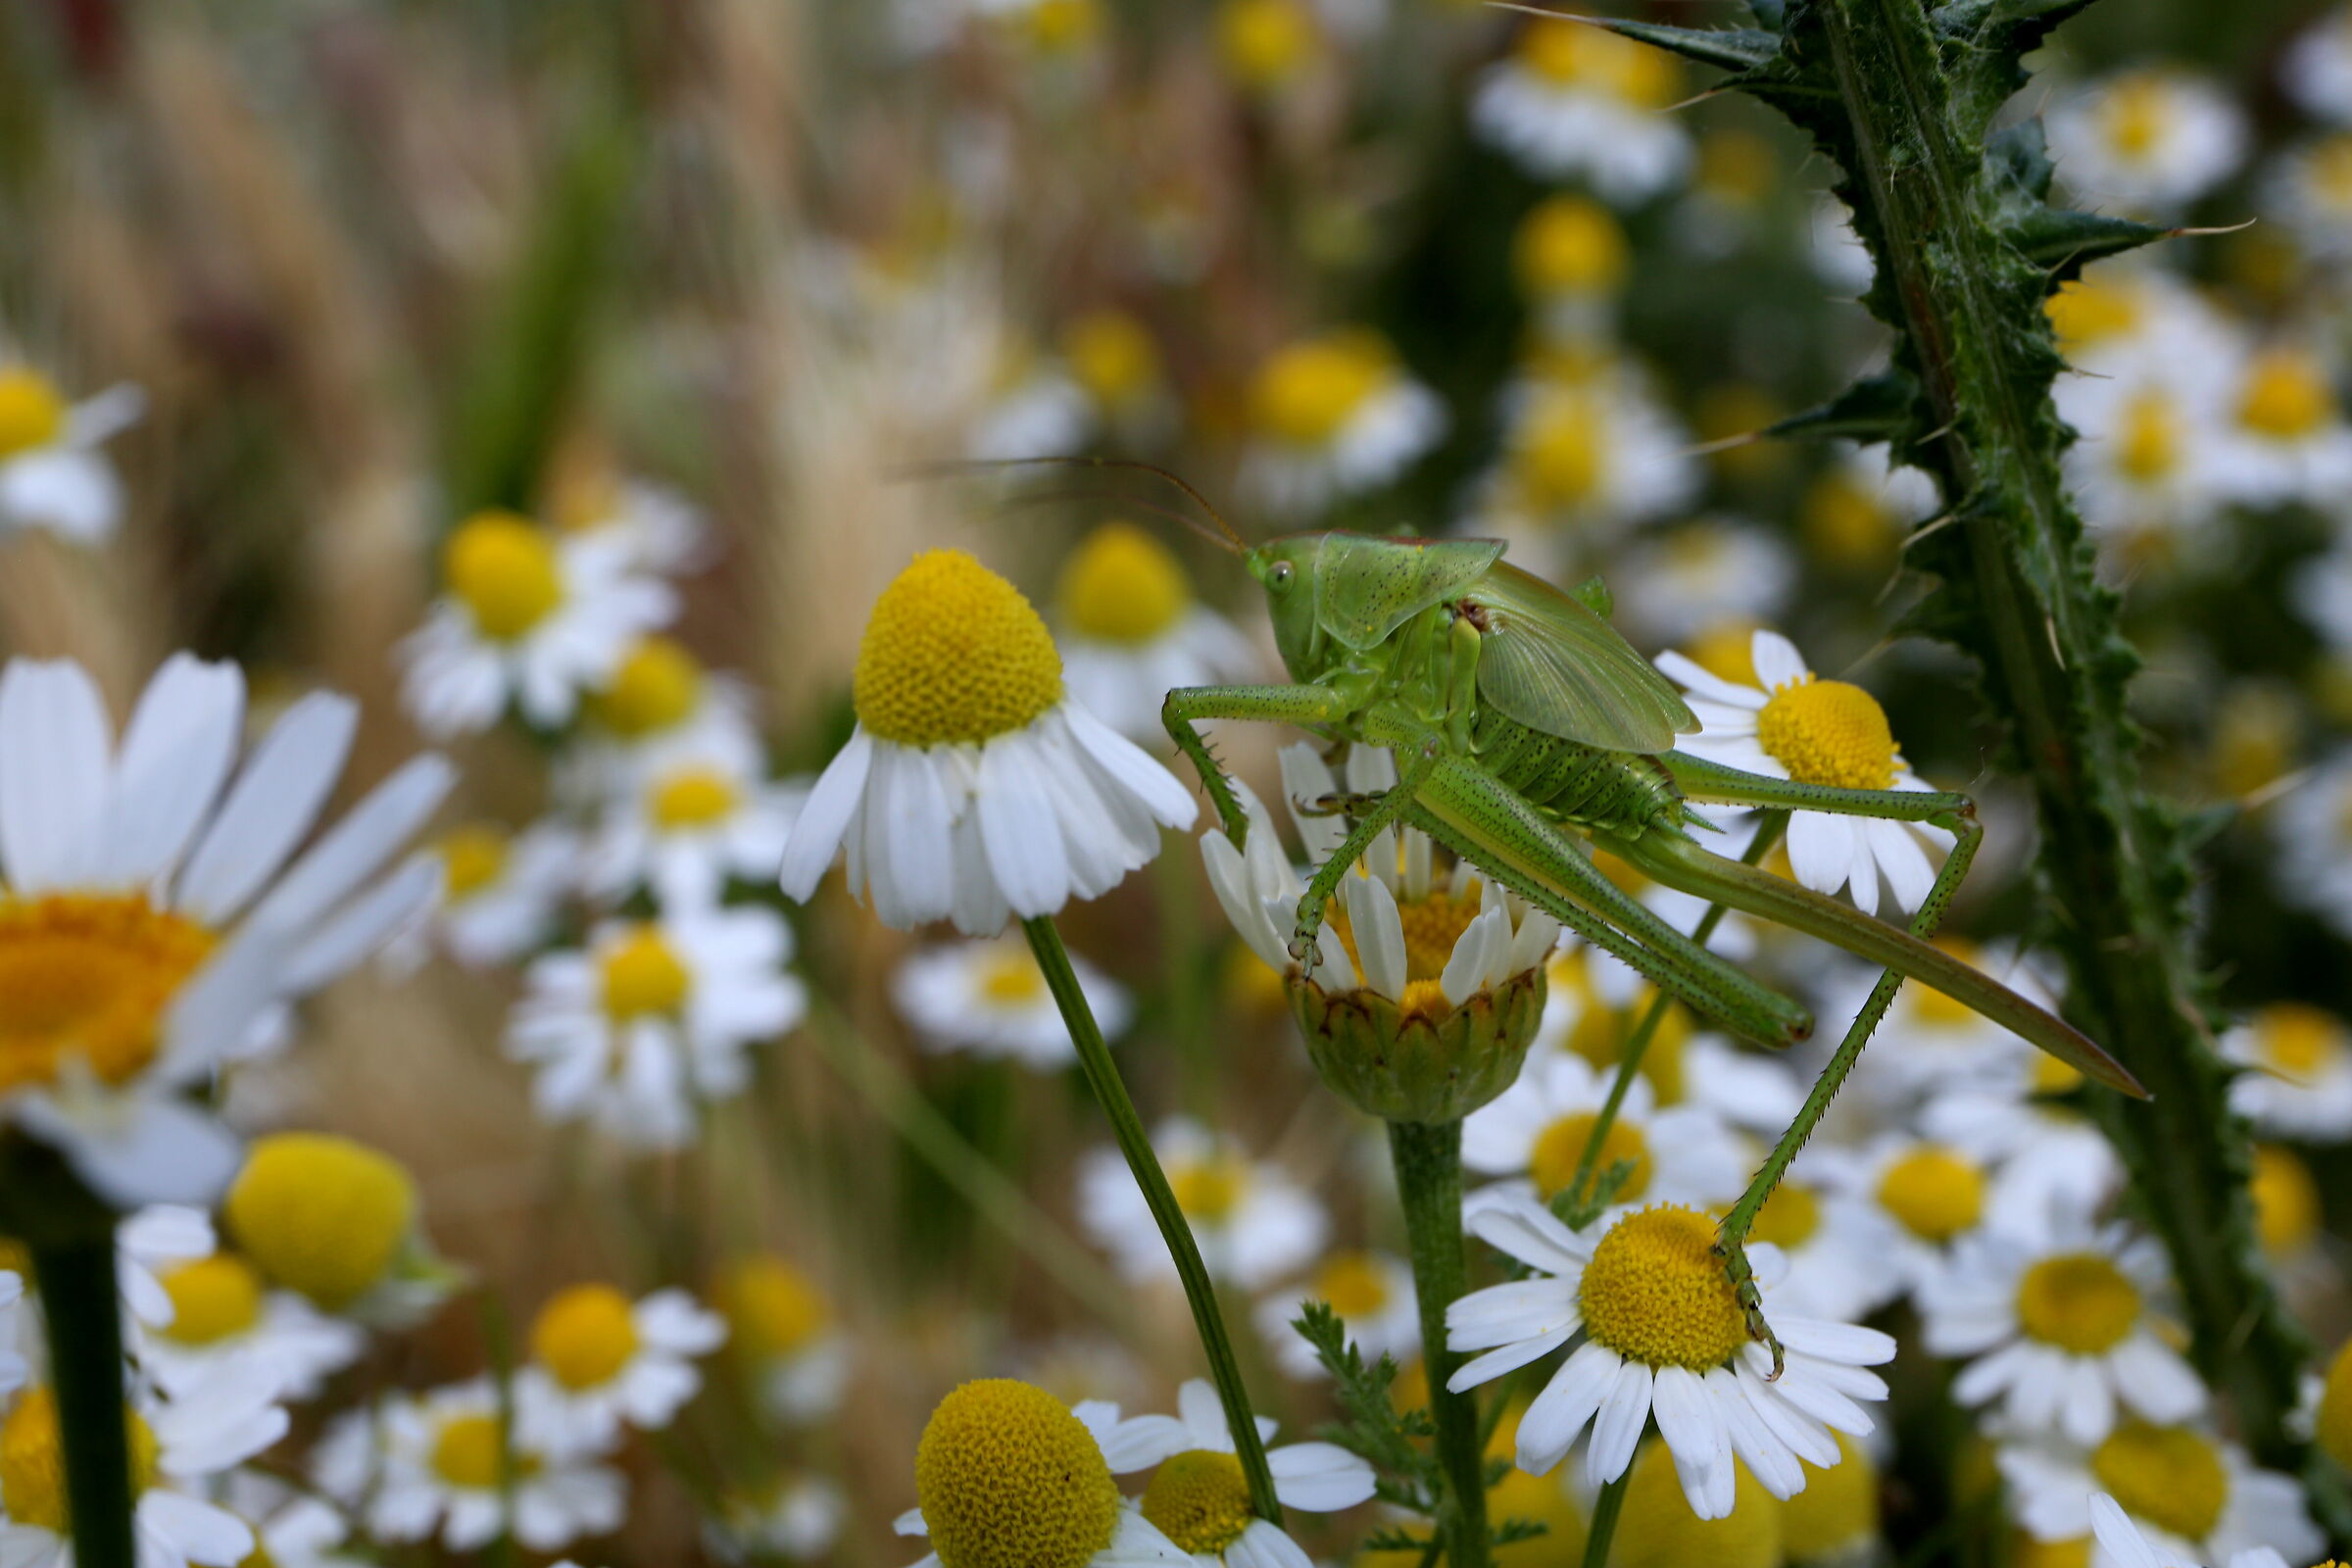 Petalosa Grasshopper...